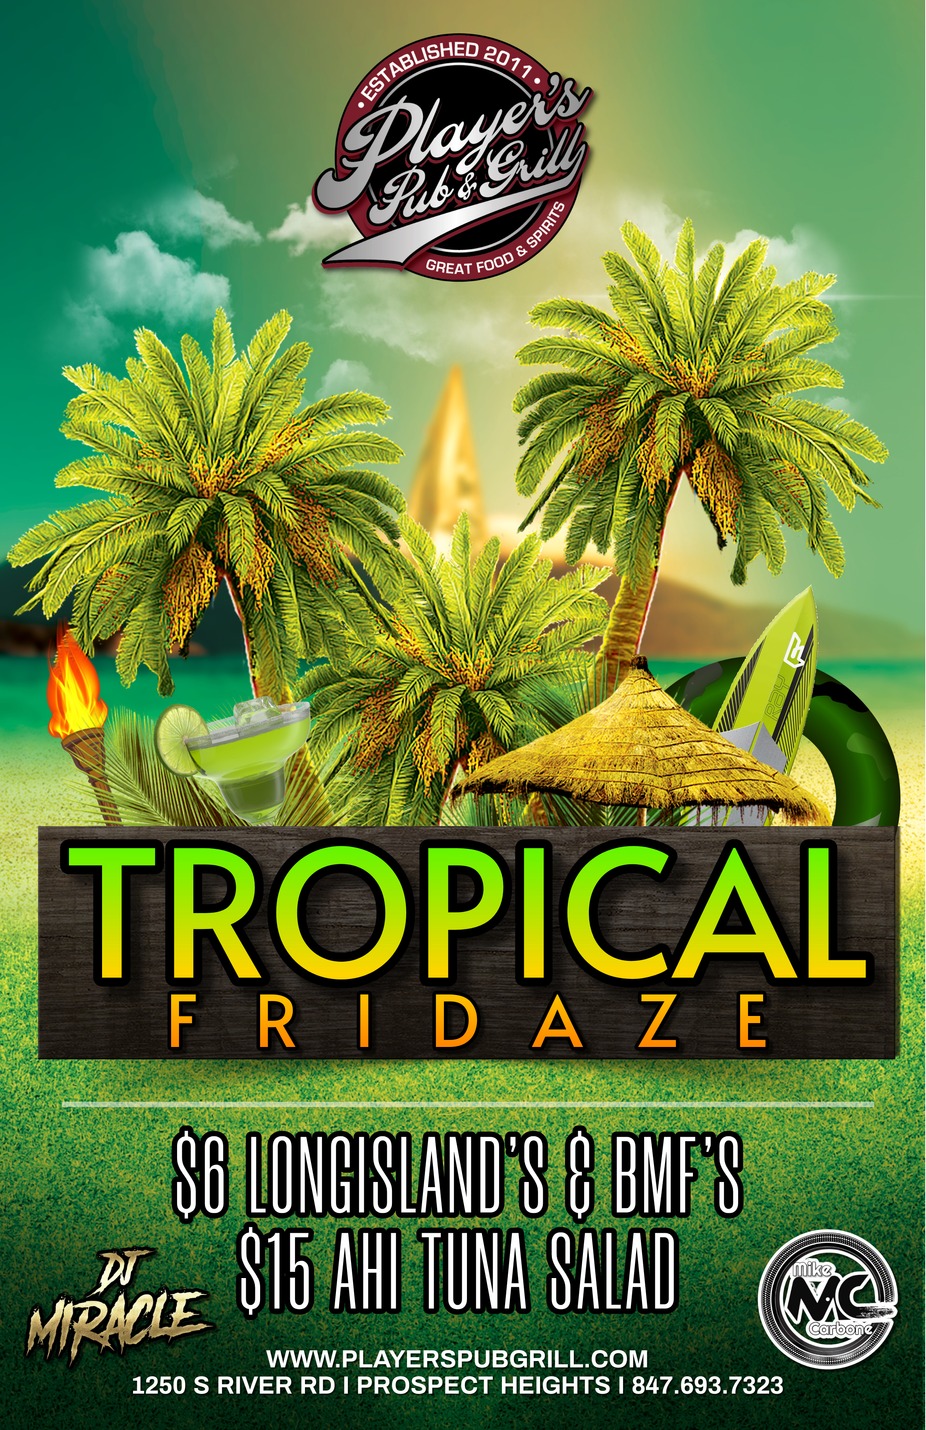 Tropical Fridaze event photo